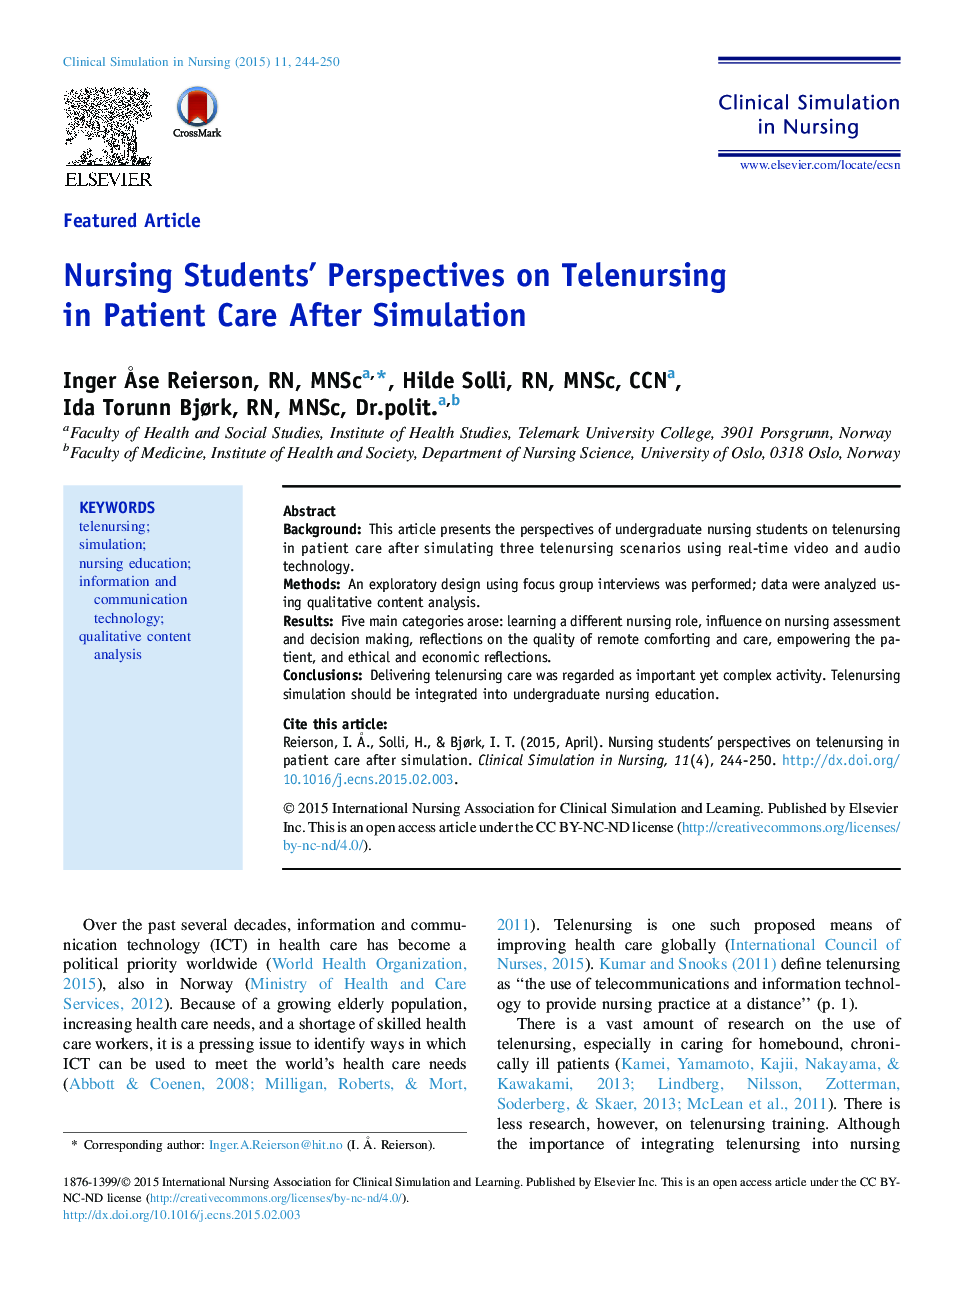 دیدگاههای دانشجویان ویژه مقاله در زمینه مراقبت از بیماران پس از شبیه سازی 